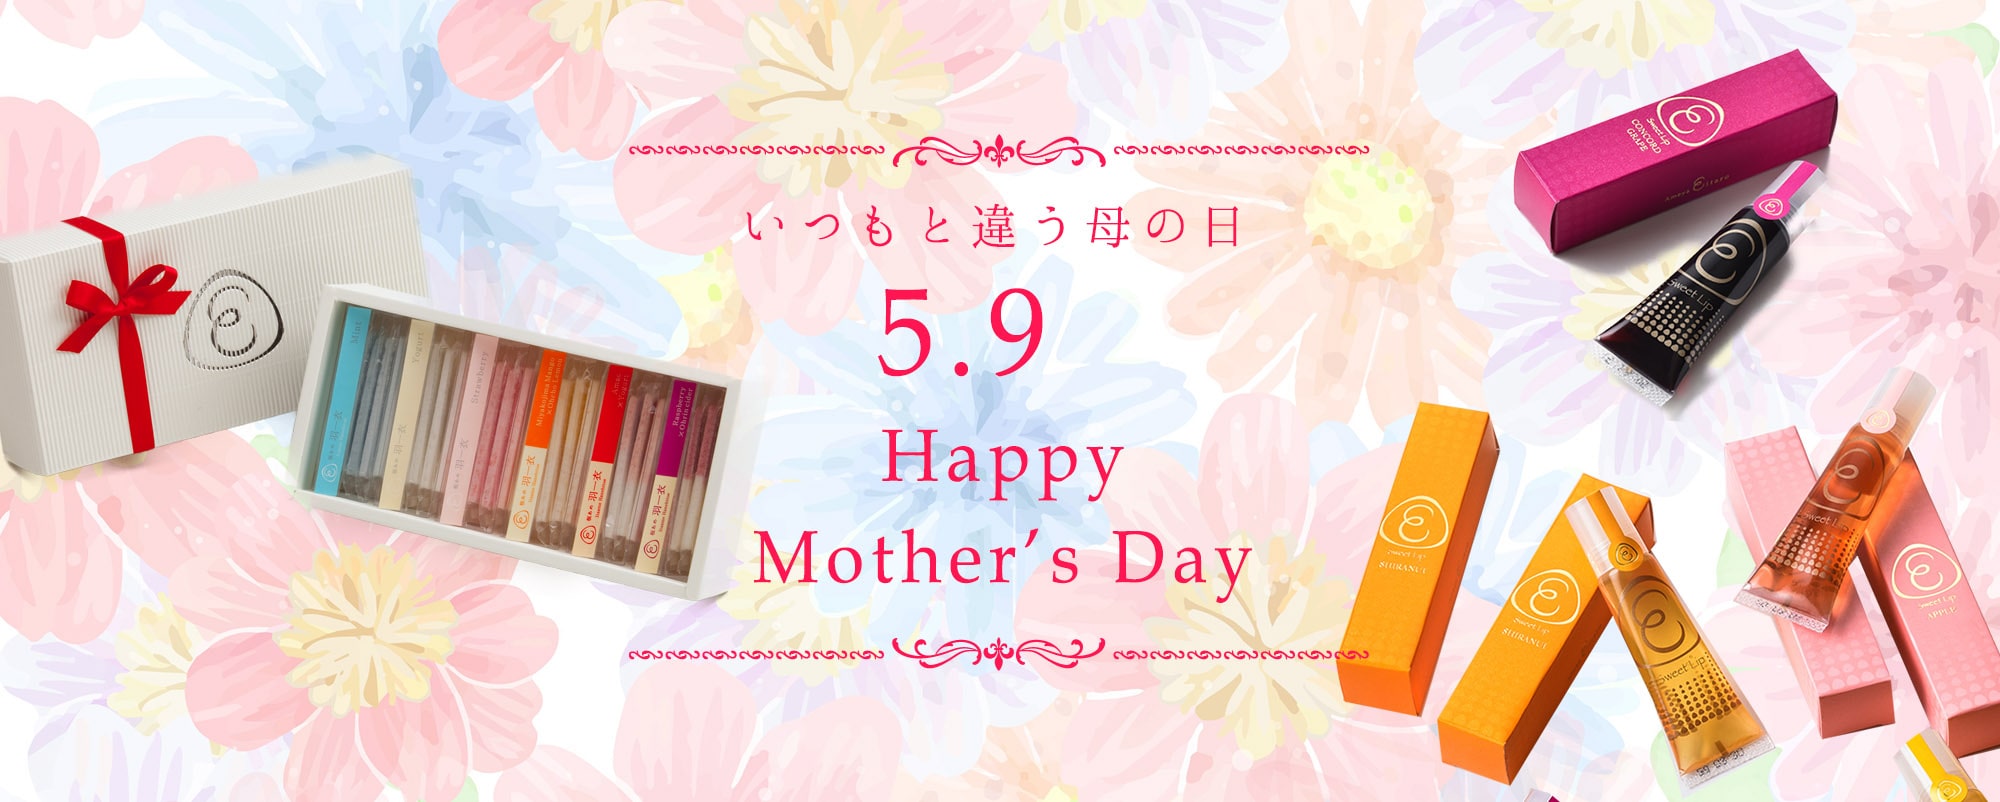 いつもと違う母の日 2021年5月9日 Happy Mother's Day